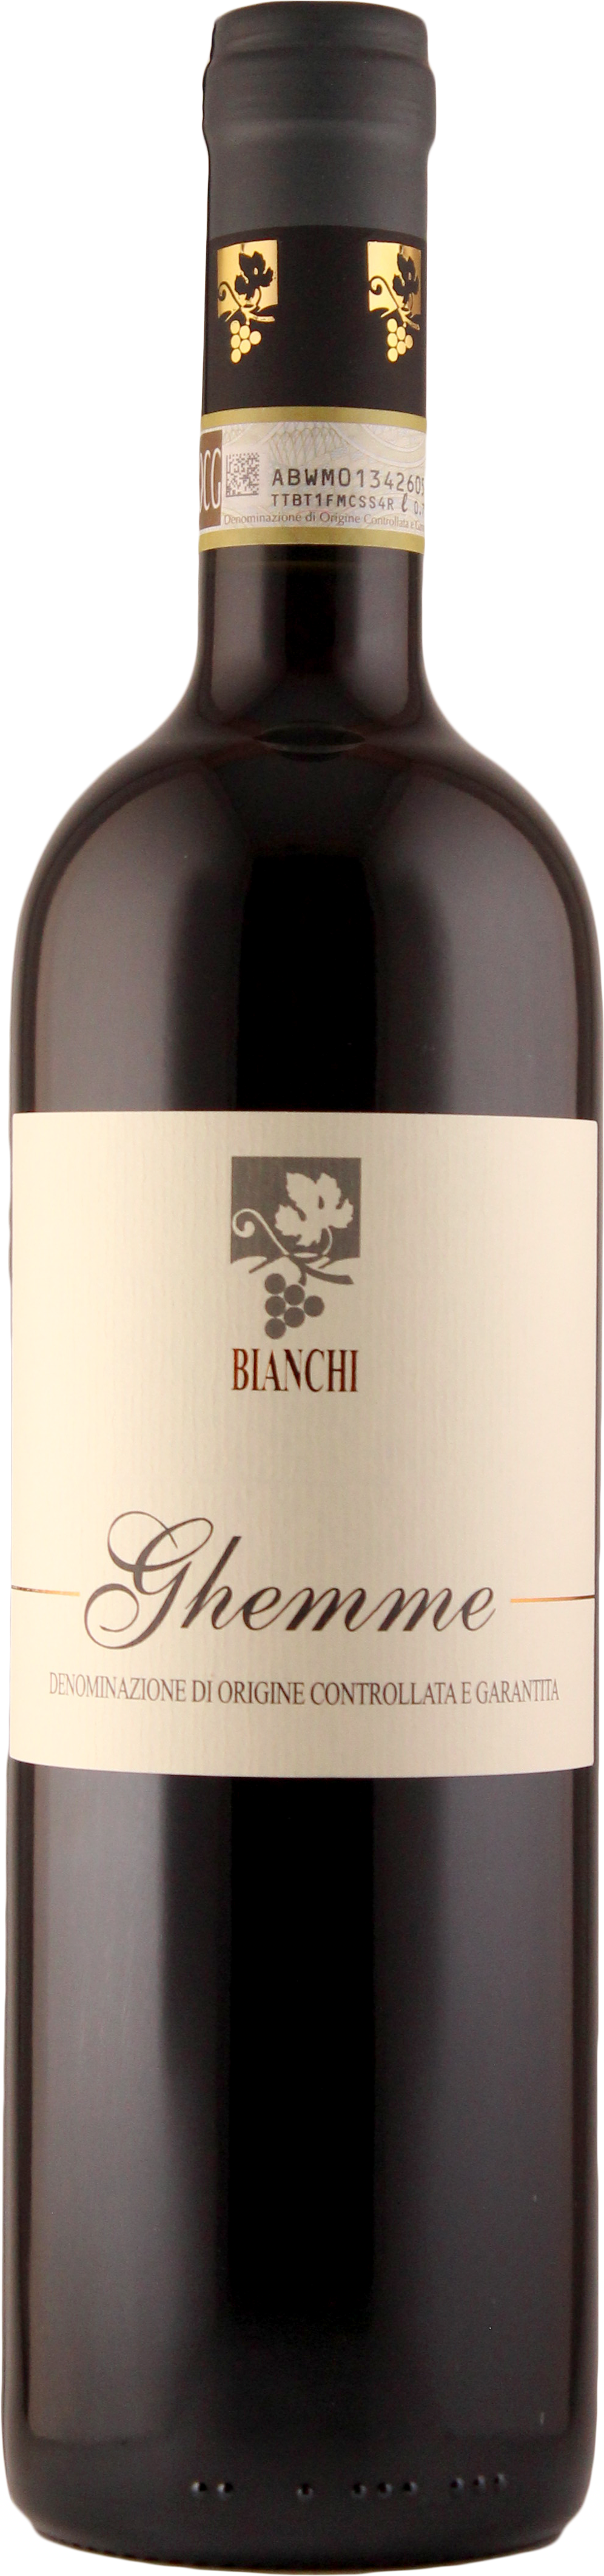 Ghemme 2012 - Bianchi/Piemont